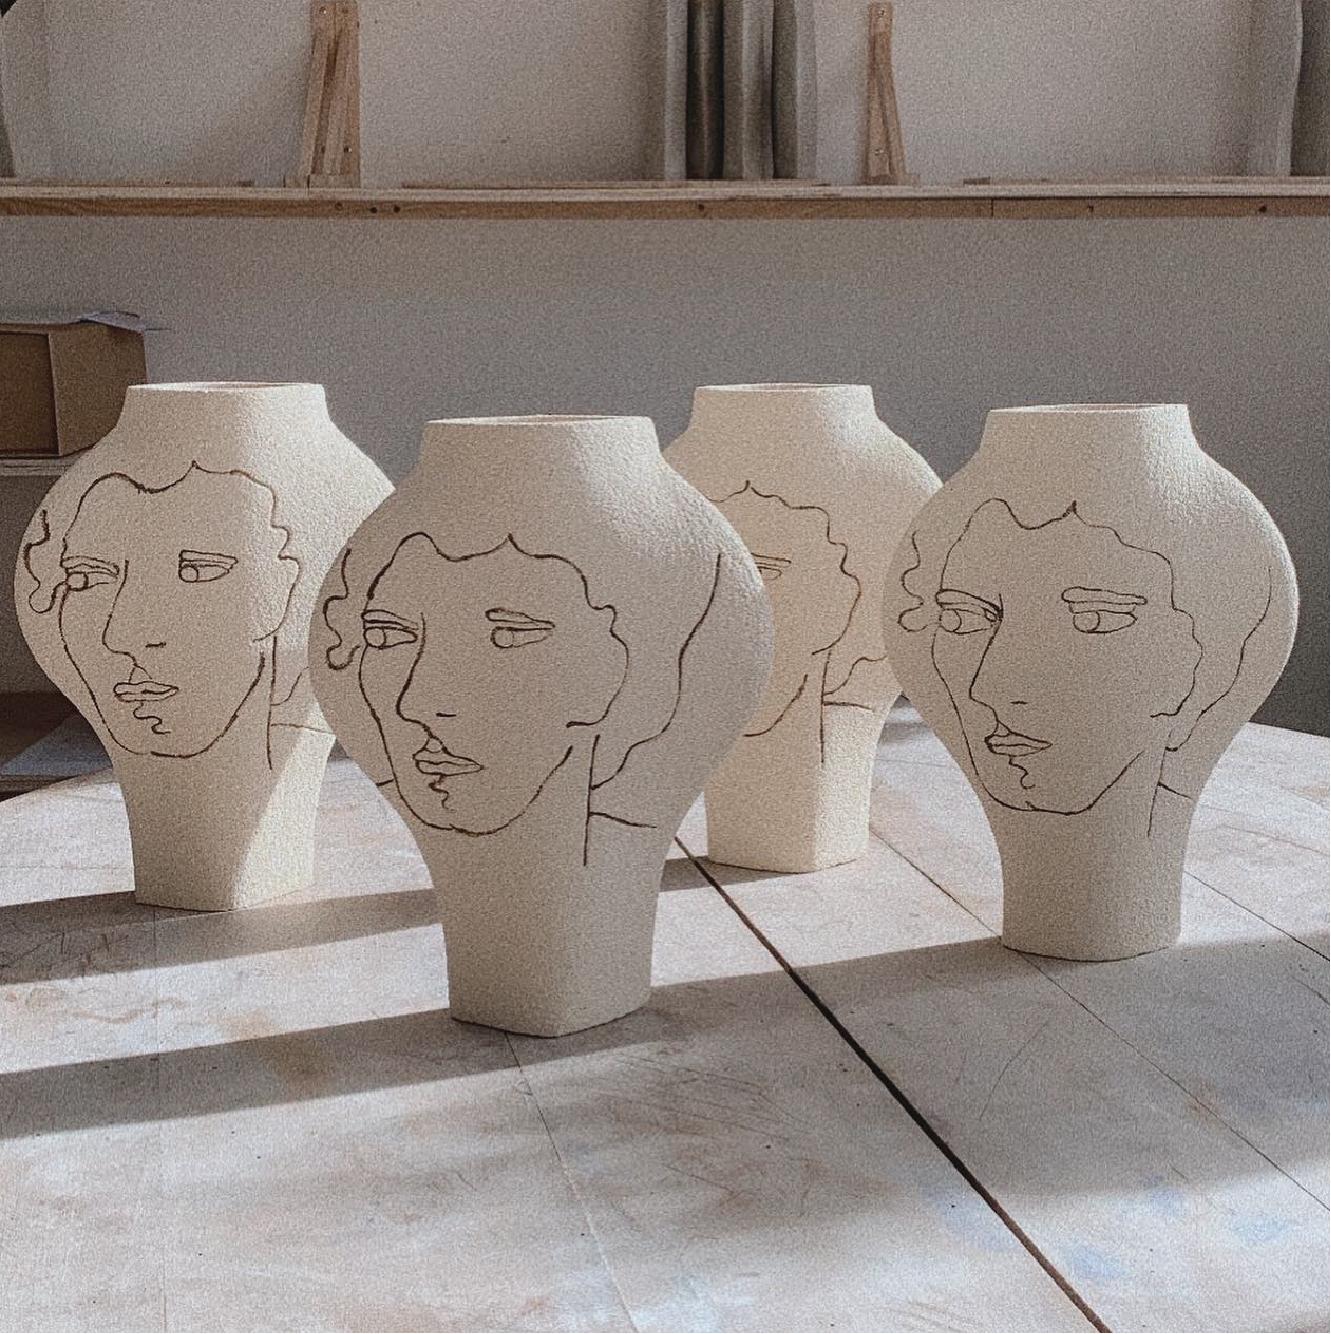 Par IN Ceramique

Vase en céramique blanche fait à la main

Le modèle DAL avec des motifs basés sur des peintures abstraites qui sont appliqués sur le vase avant sa première cuisson, en utilisant une technique de 